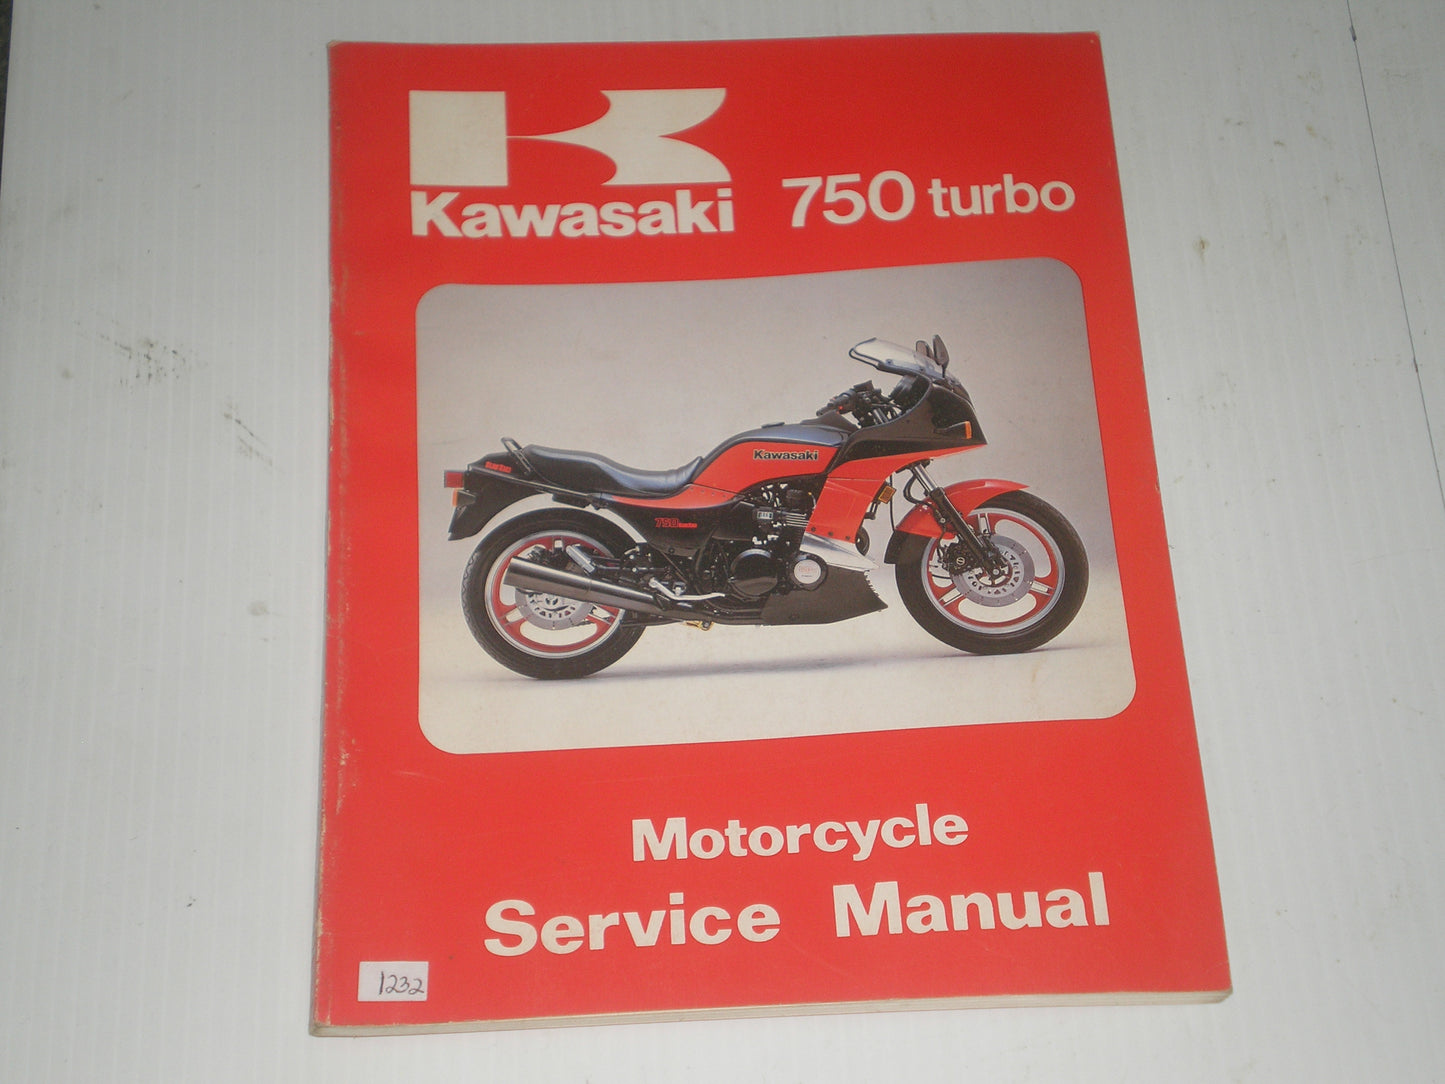 KAWASAKI ZX750 E1 Turbo 1984  Service Manual Supplement  99924-1049-51  #1232